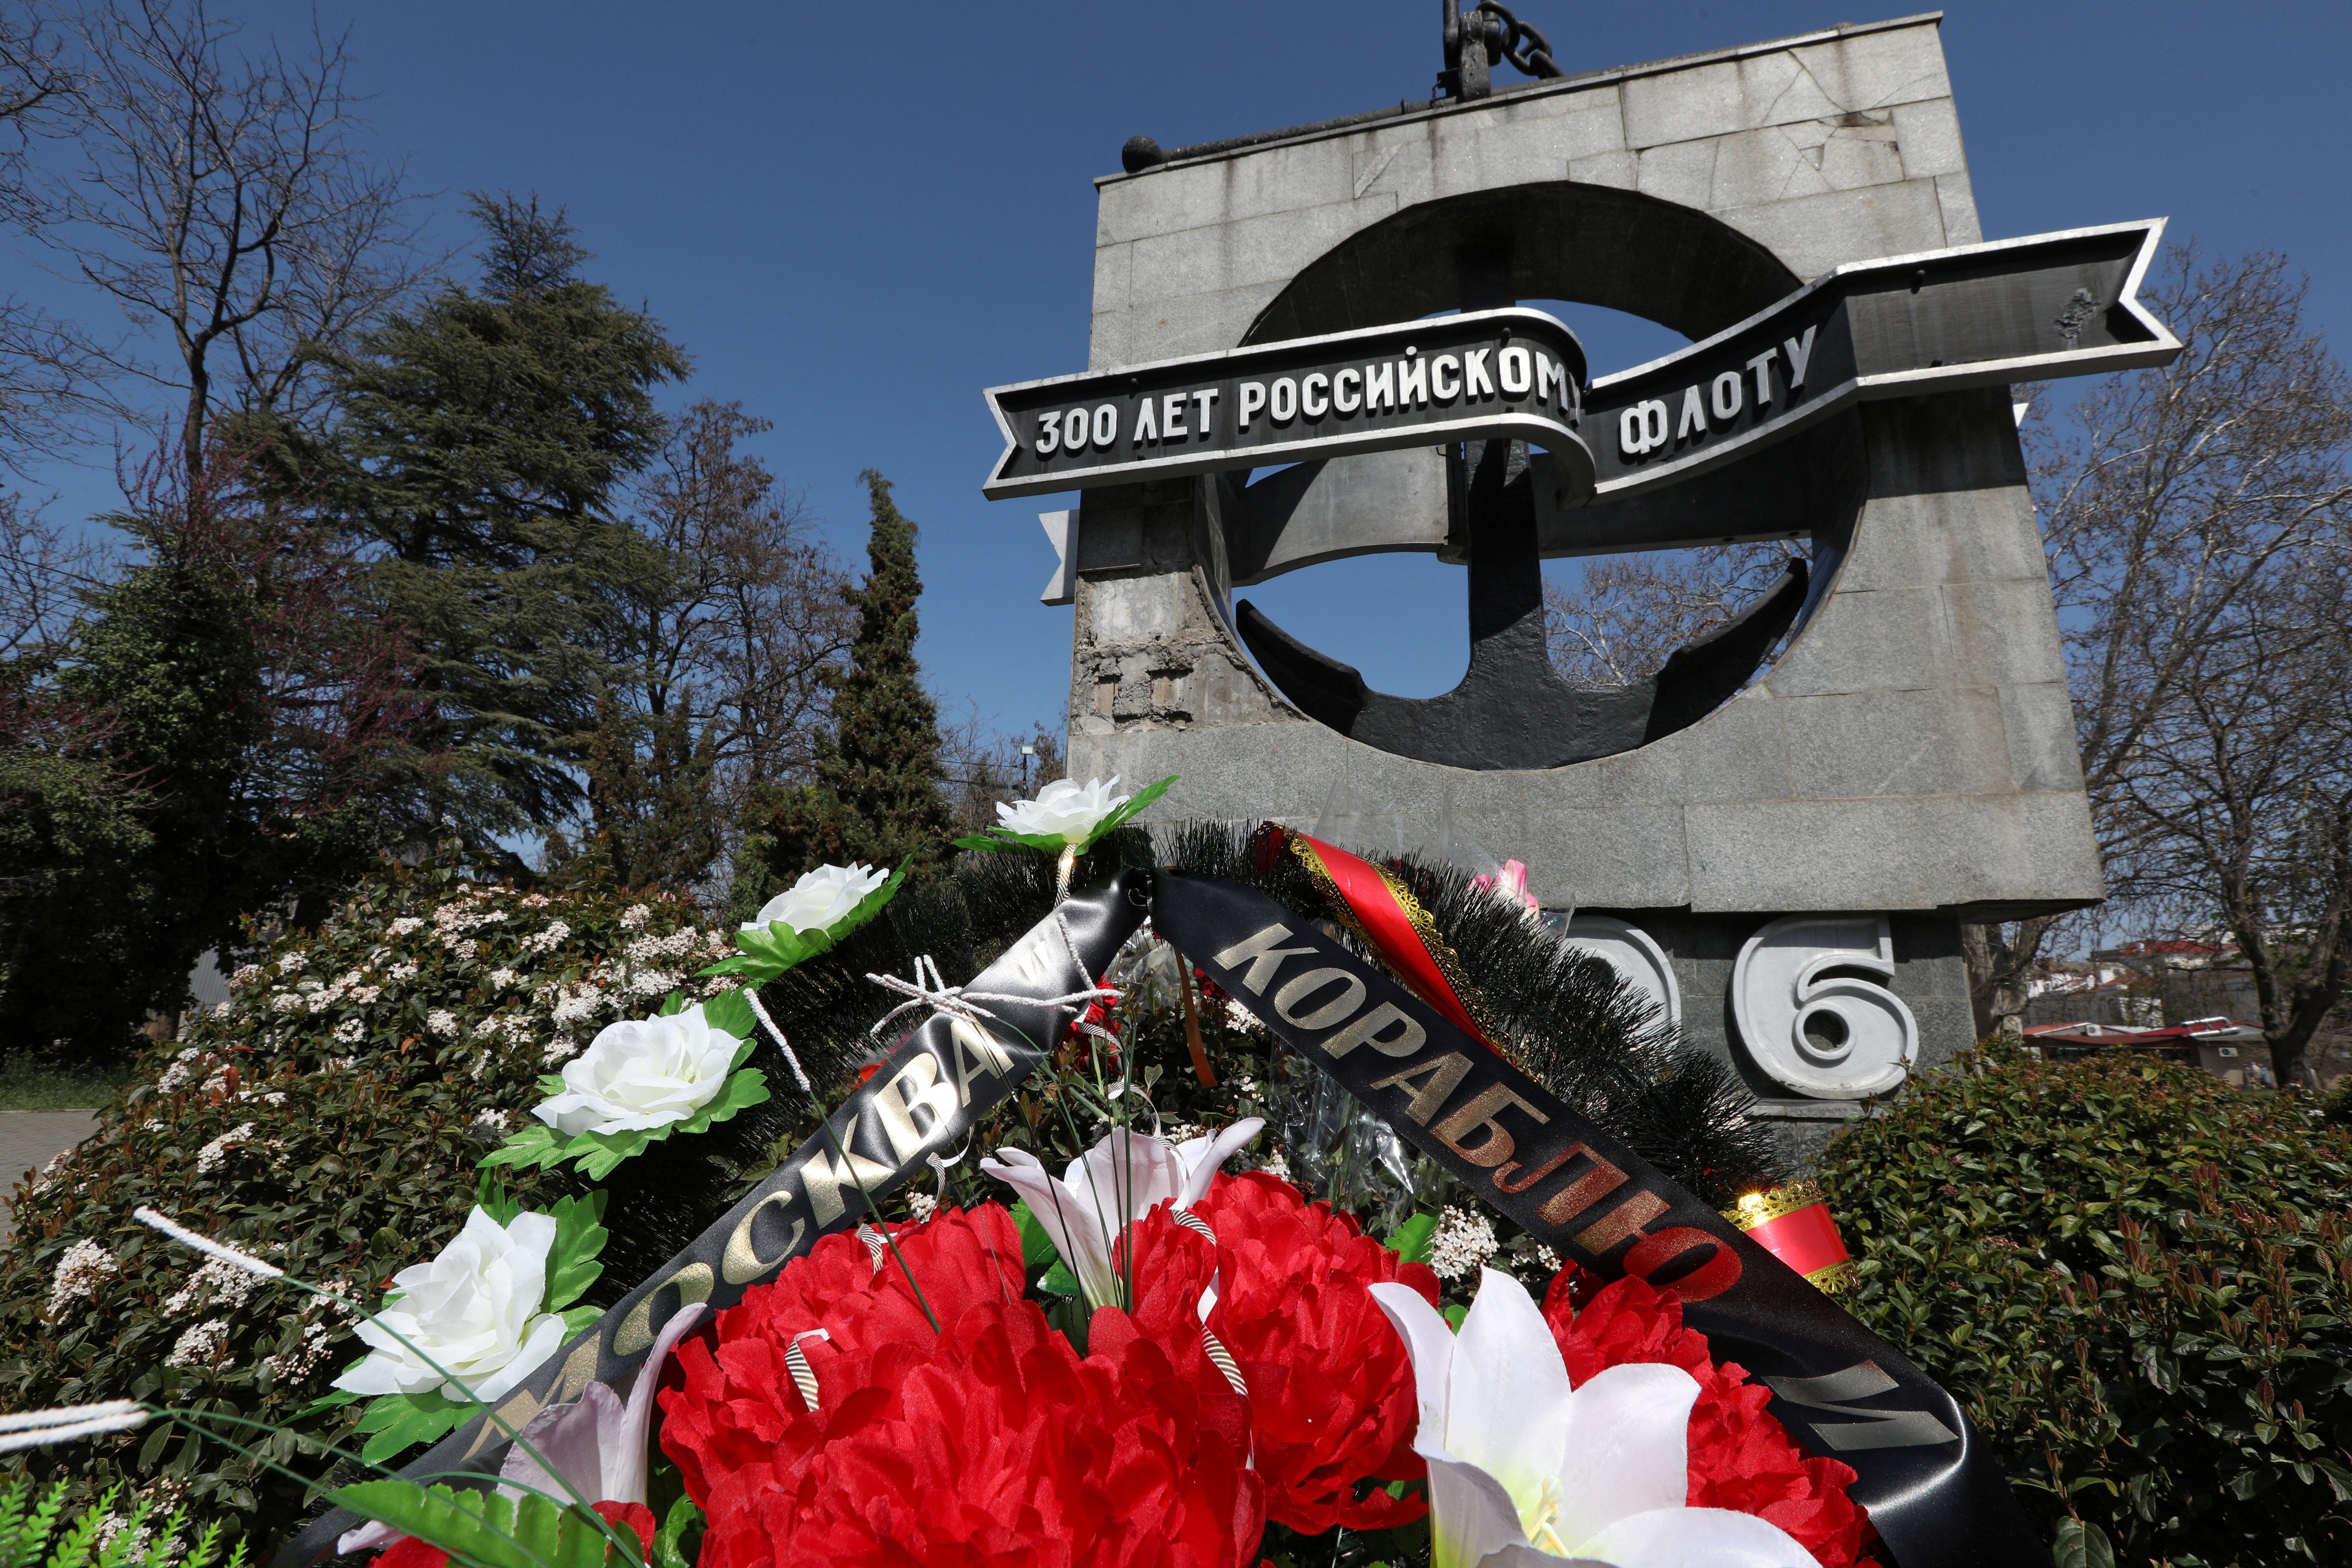 Una corona de flores con una cinta en la que se lee "Al barco Moskva" se ve durante una ceremonia organizada por los veteranos de la Flota del Mar Negro en memoria del crucero de misiles ruso Moskva, que se hundió en el Mar Negro, en Sebastopol, Crimea 15 de abril de 2022. REUTERS/Alexey Pavlishak